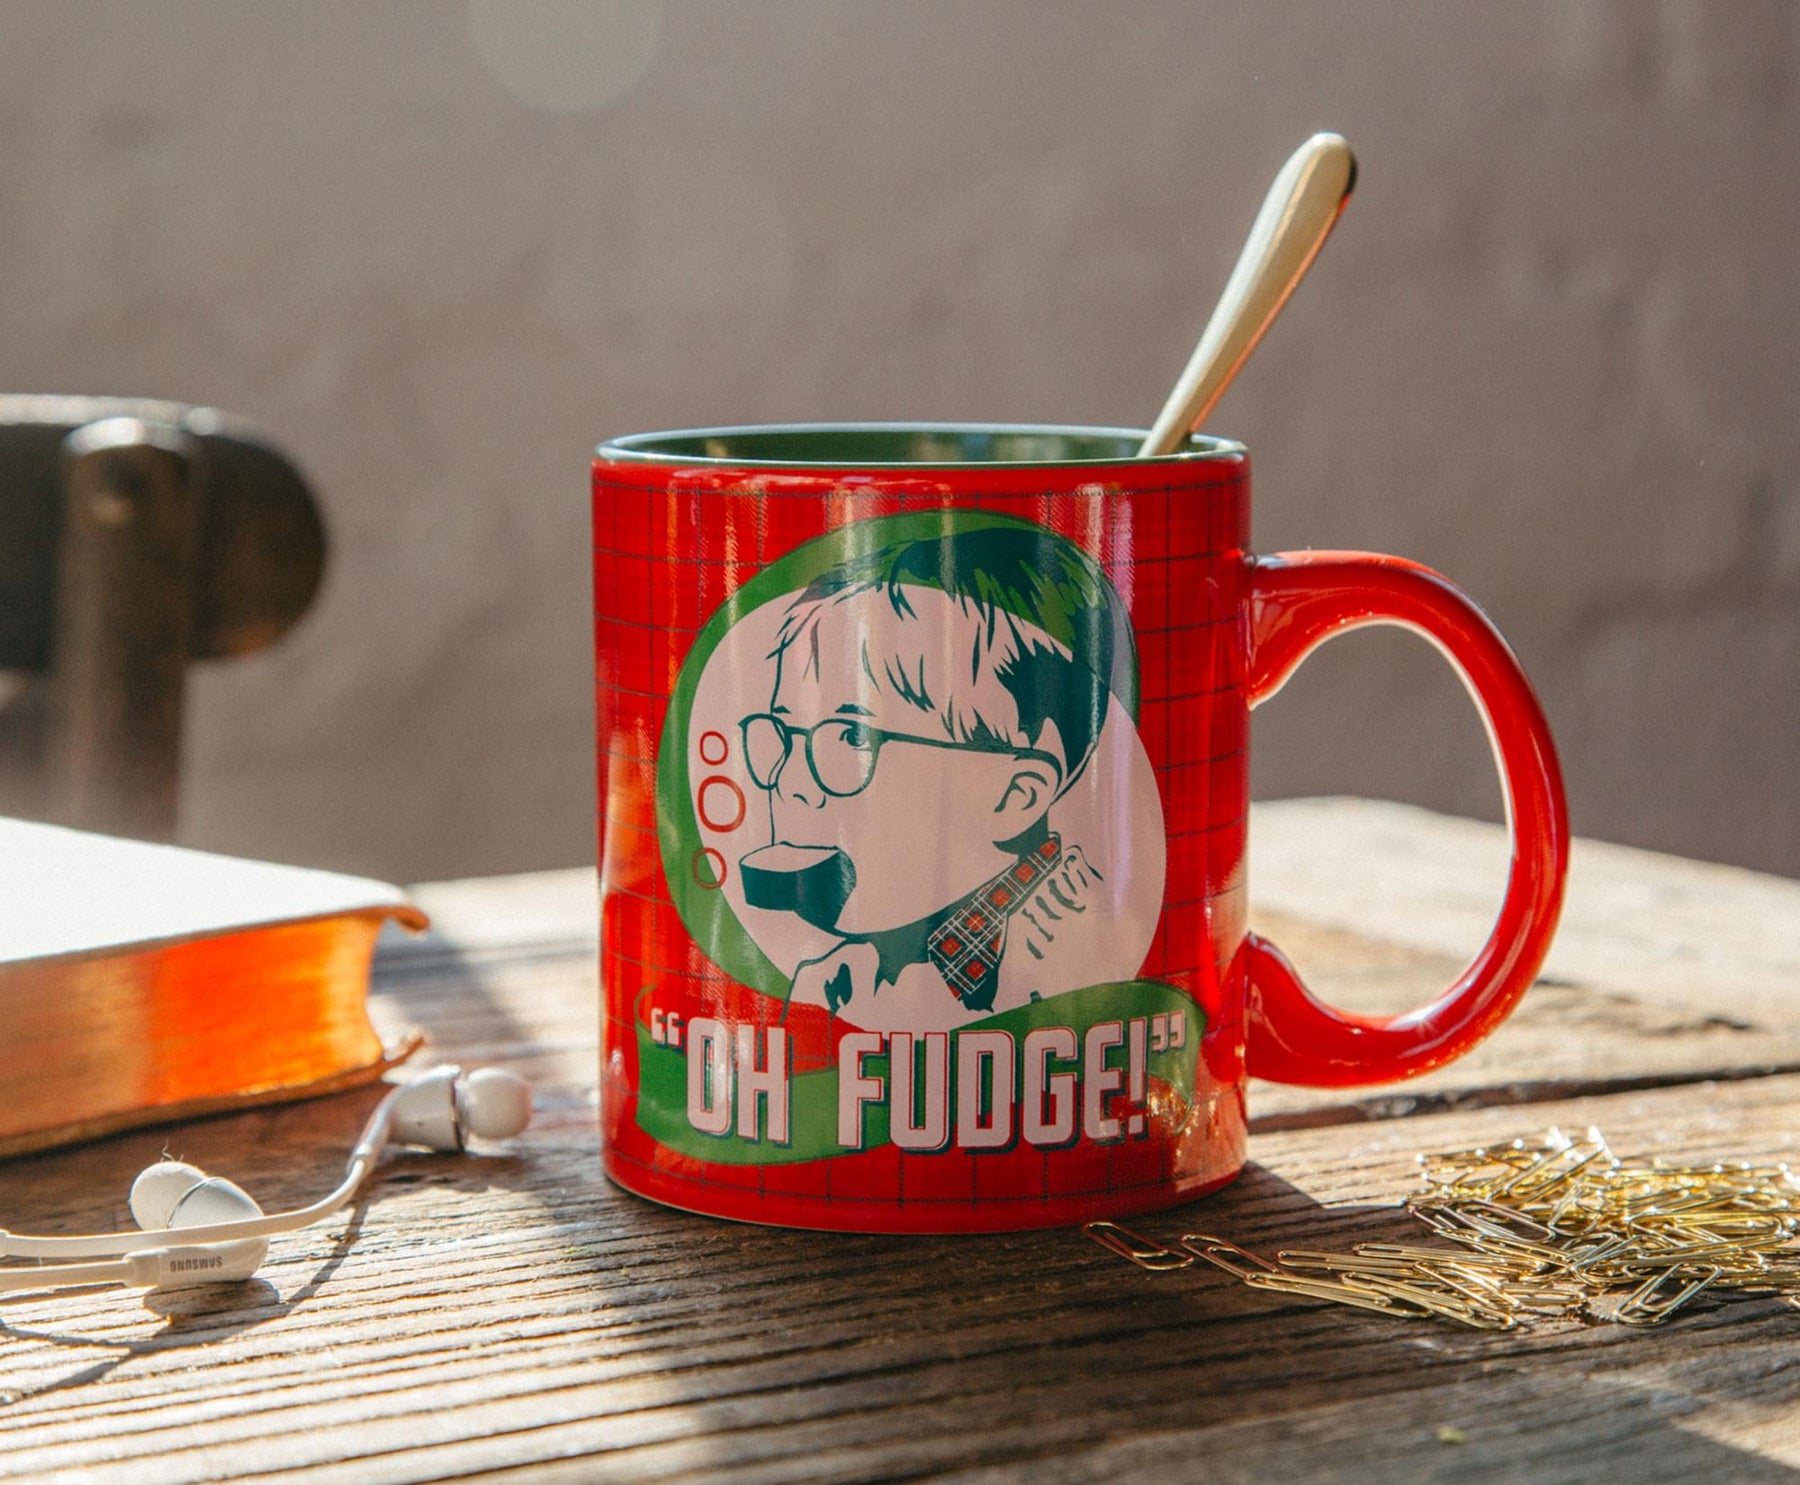 A Christmas Story "Oh Fudge" Ceramic Mug | Holds 20 Ounces